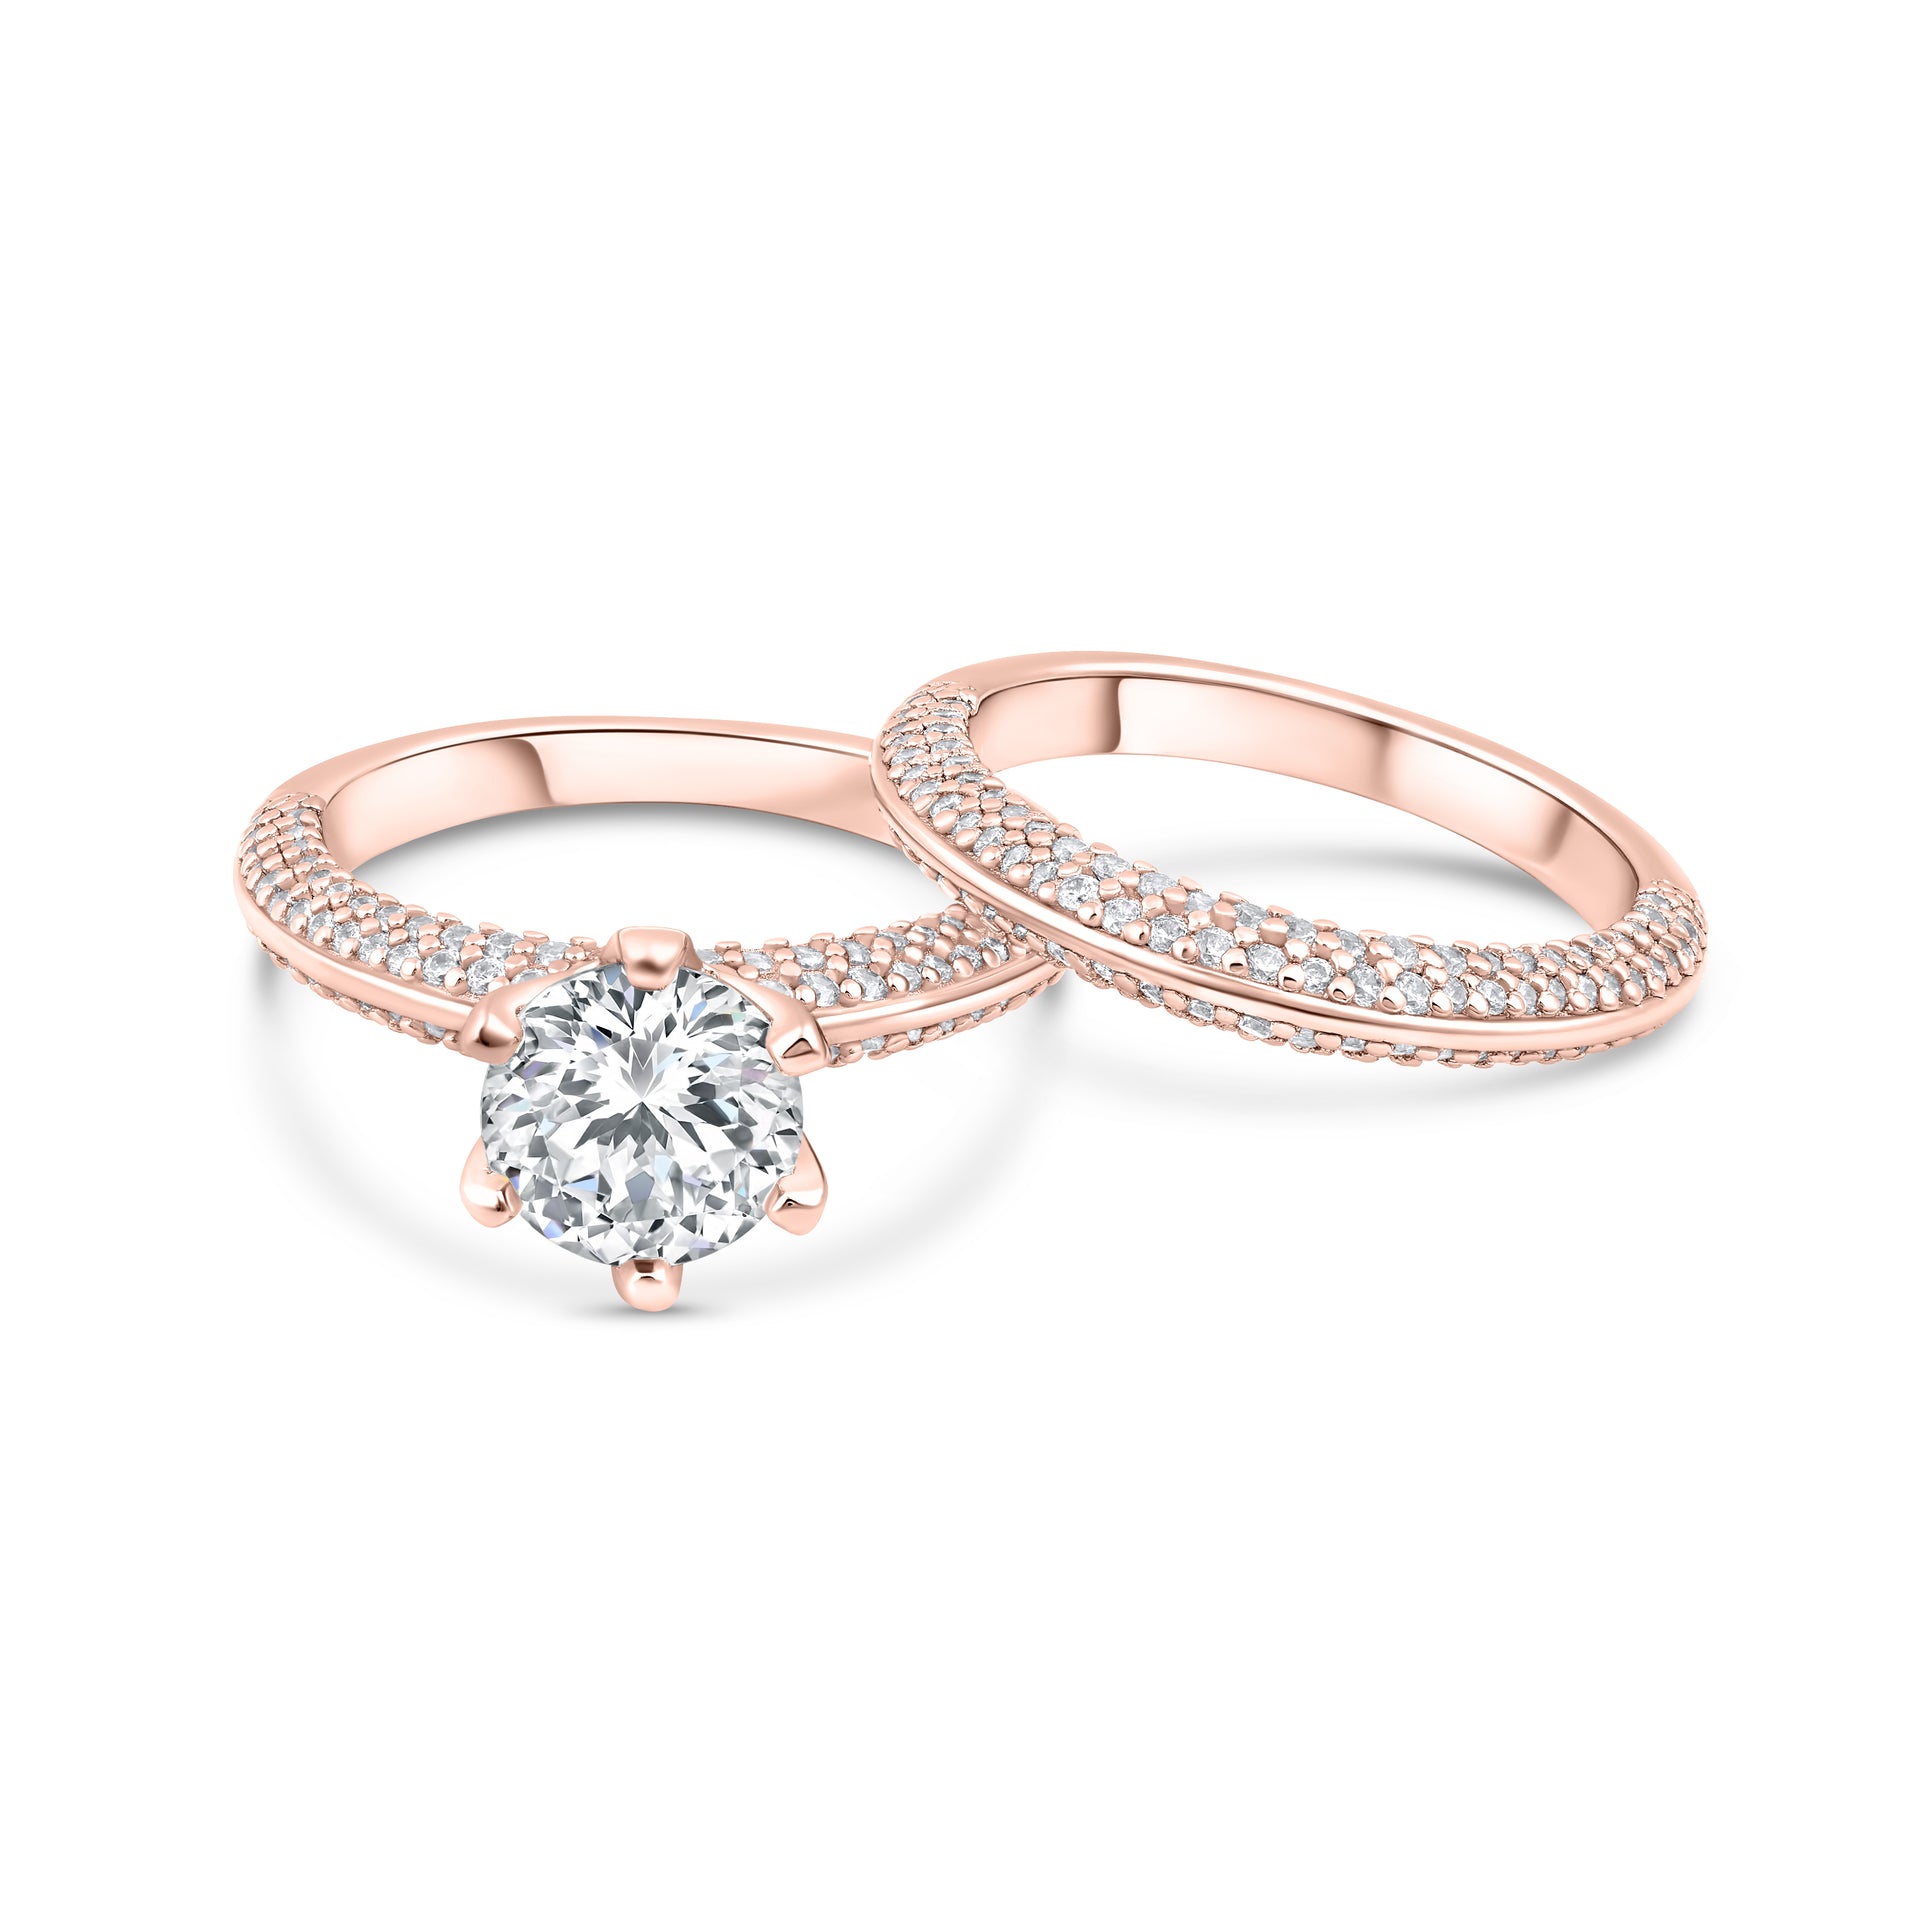 Rose gold 2 carat round cut 6 prong wedding rings